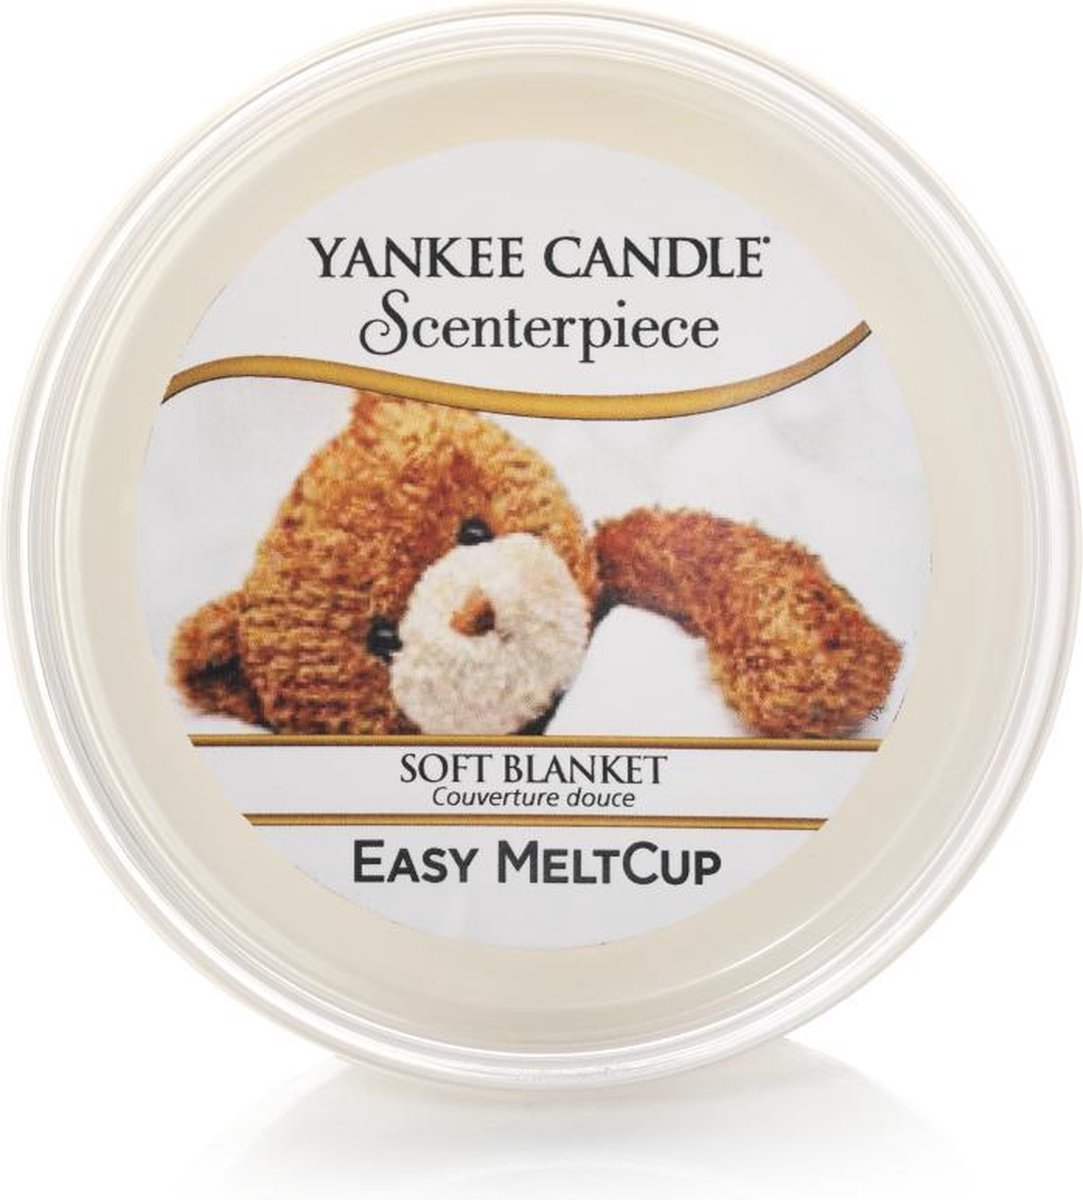 Yankee Candle - Soft Blanket Scenterpiece Easy MeltCup ( měkká deka ) - Vonný vosk do aromalampy (U)